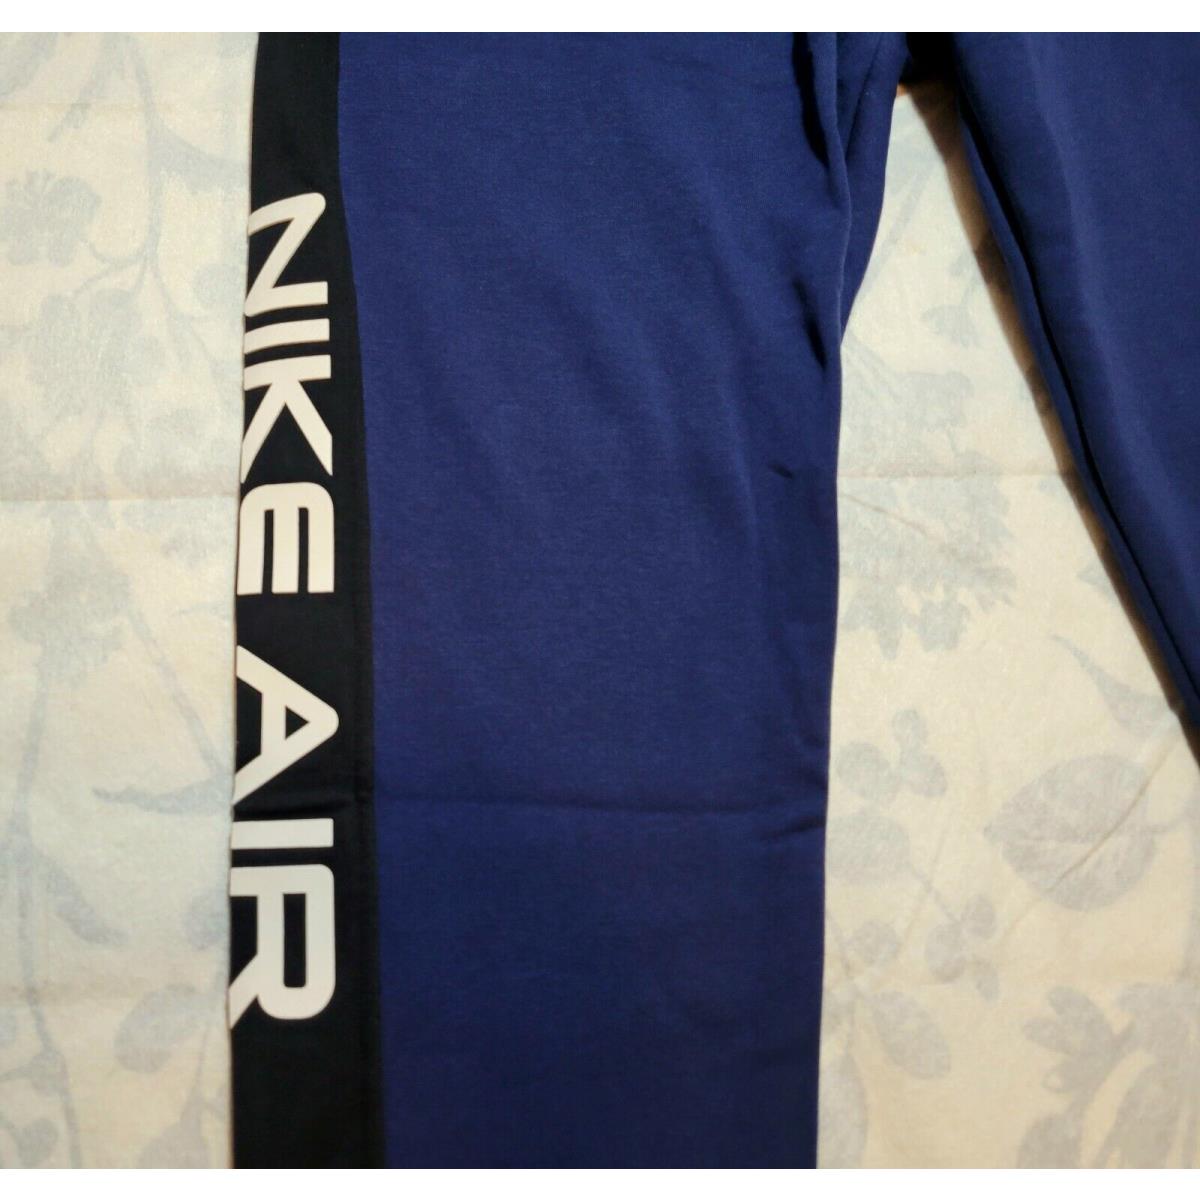 Nike clothing  - Blue Black 2